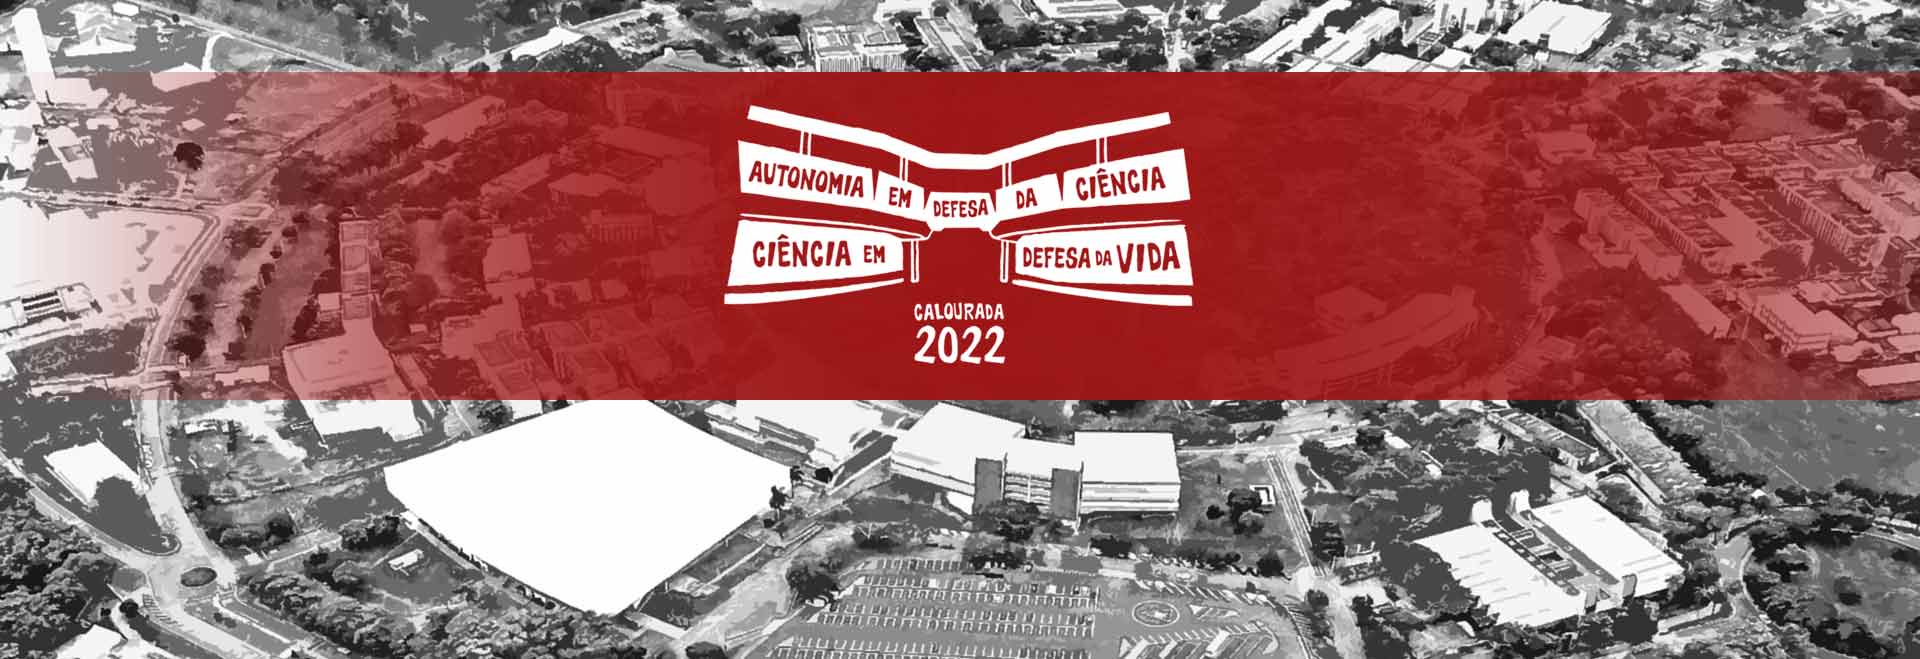 arte mostra uma foto aérea do campus com uma faixa vermelha sobre ele e a logo de divulgação da calourada 2022